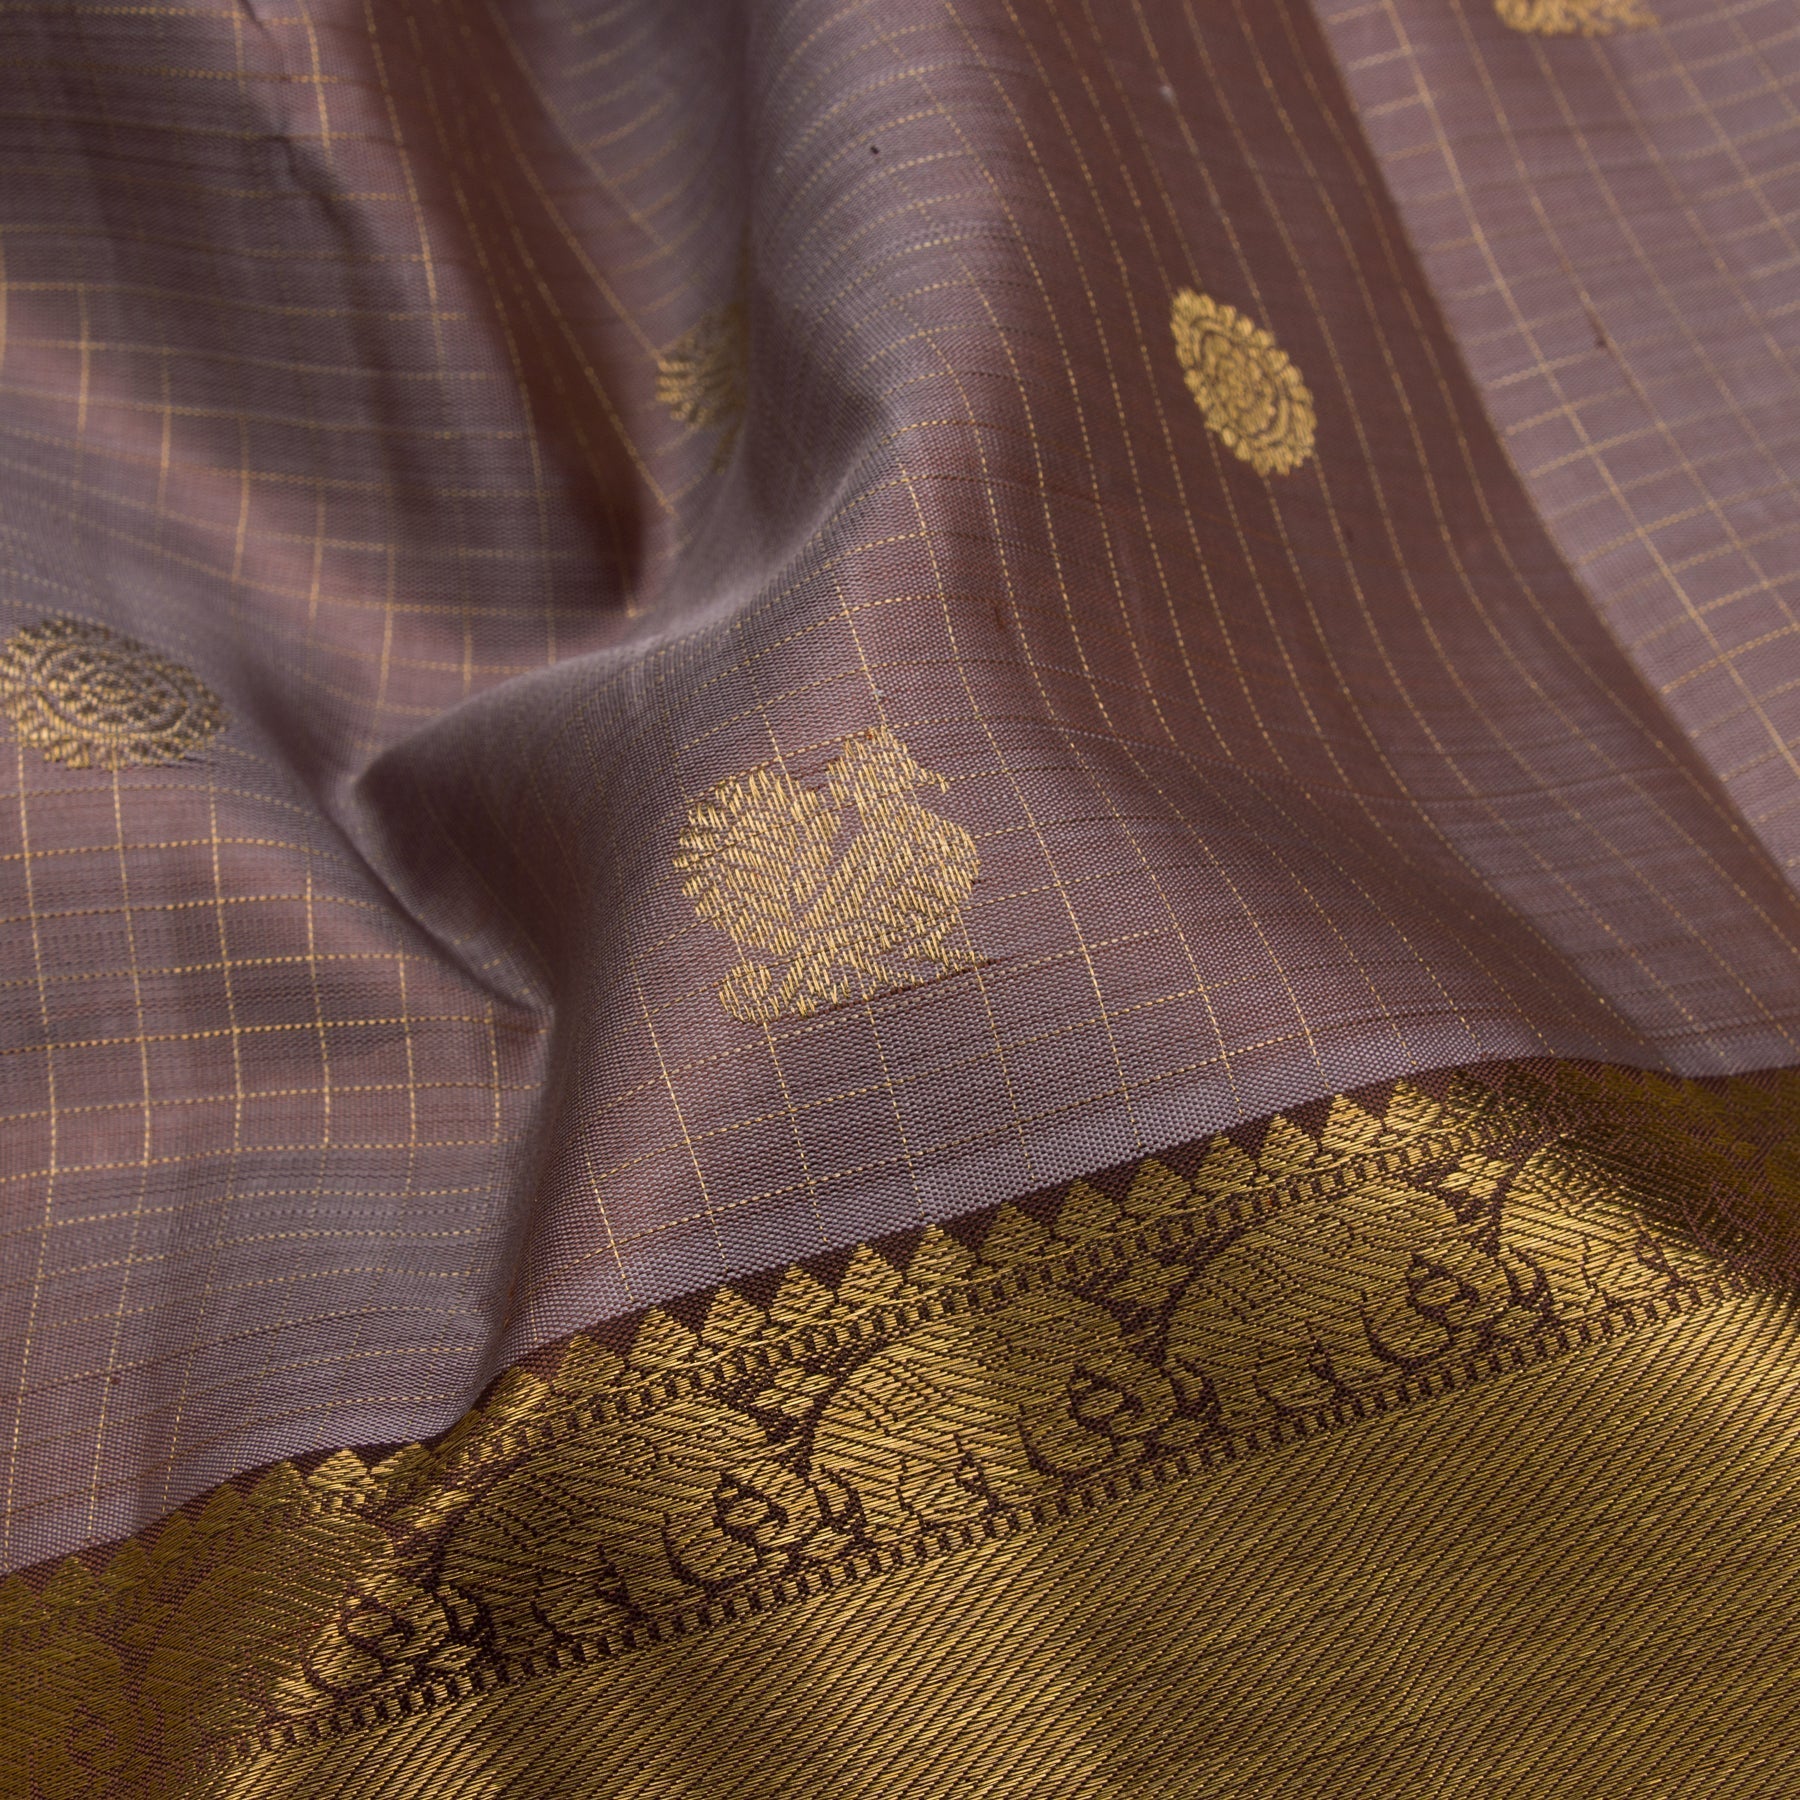 Kanakavalli Kanjivaram Silk Sari 22-599-HS001-09335 - Fabric View